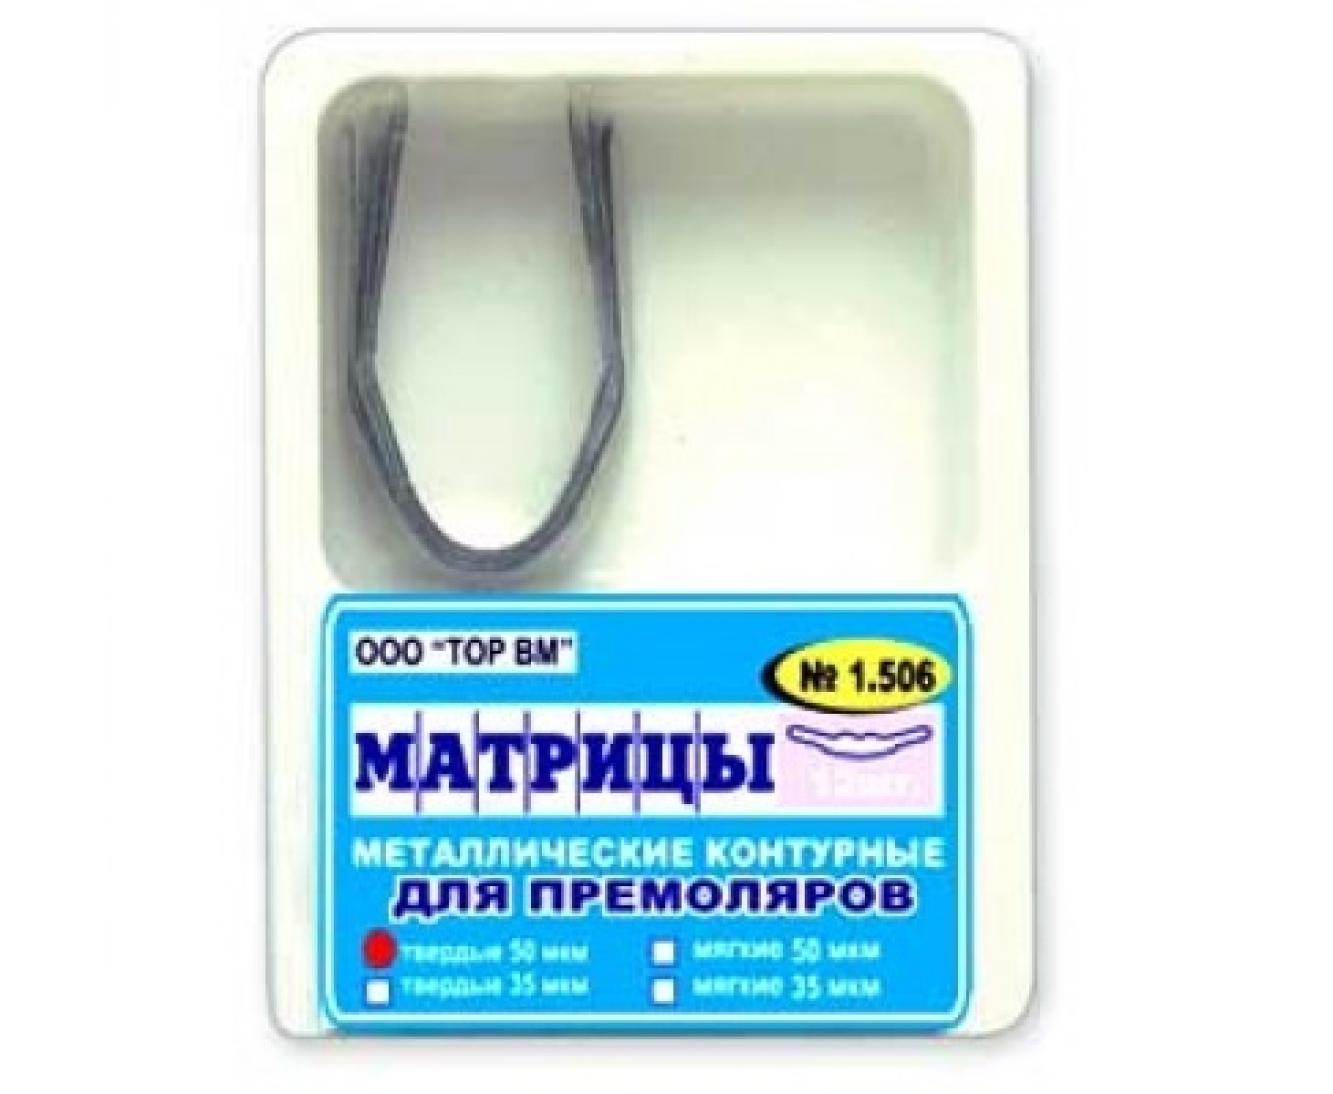 Матрицы металлические контурные, для премоляров формы 6, 1.506, ТОР ВМ (Россия)